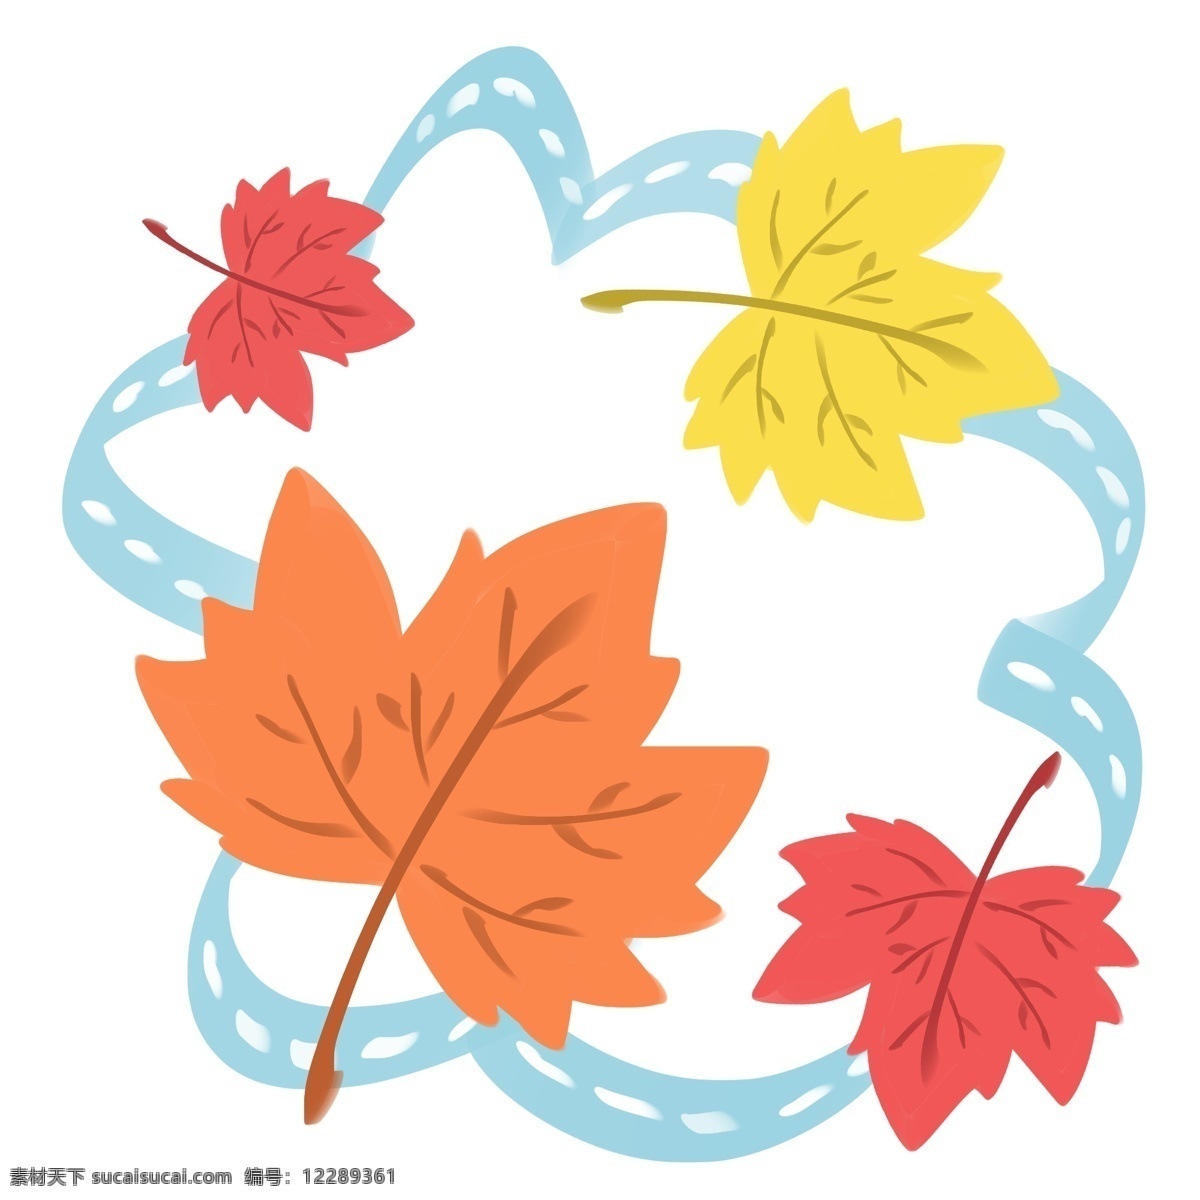 手绘 彩色 枫叶 装饰 树叶 纹路 蓝色 叶子 四片叶子